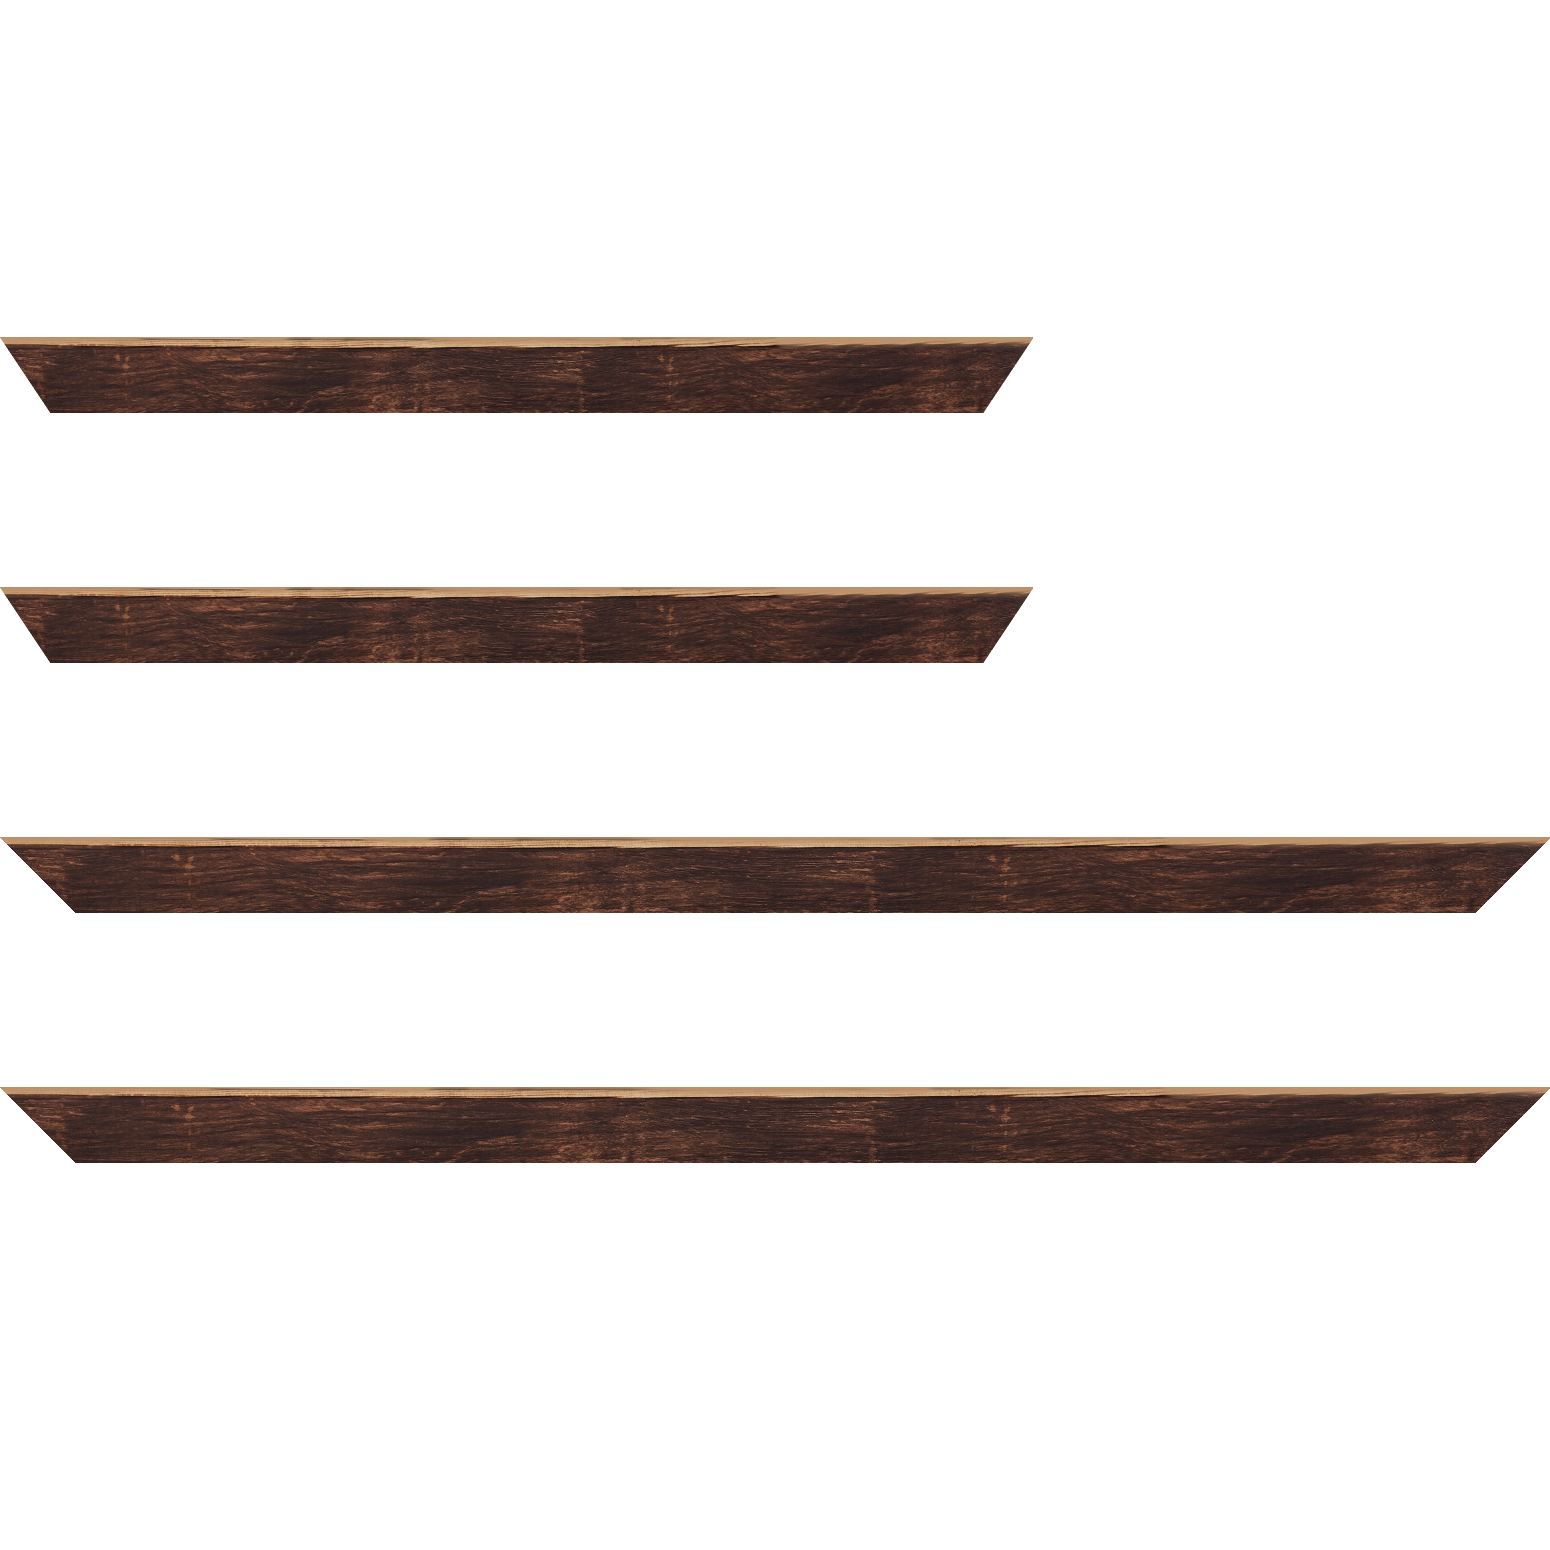 Baguette bois profil arrondi en pente plongeant largeur 2.4cm couleur marron effet ressuyé, angle du cadre extérieur filet naturel